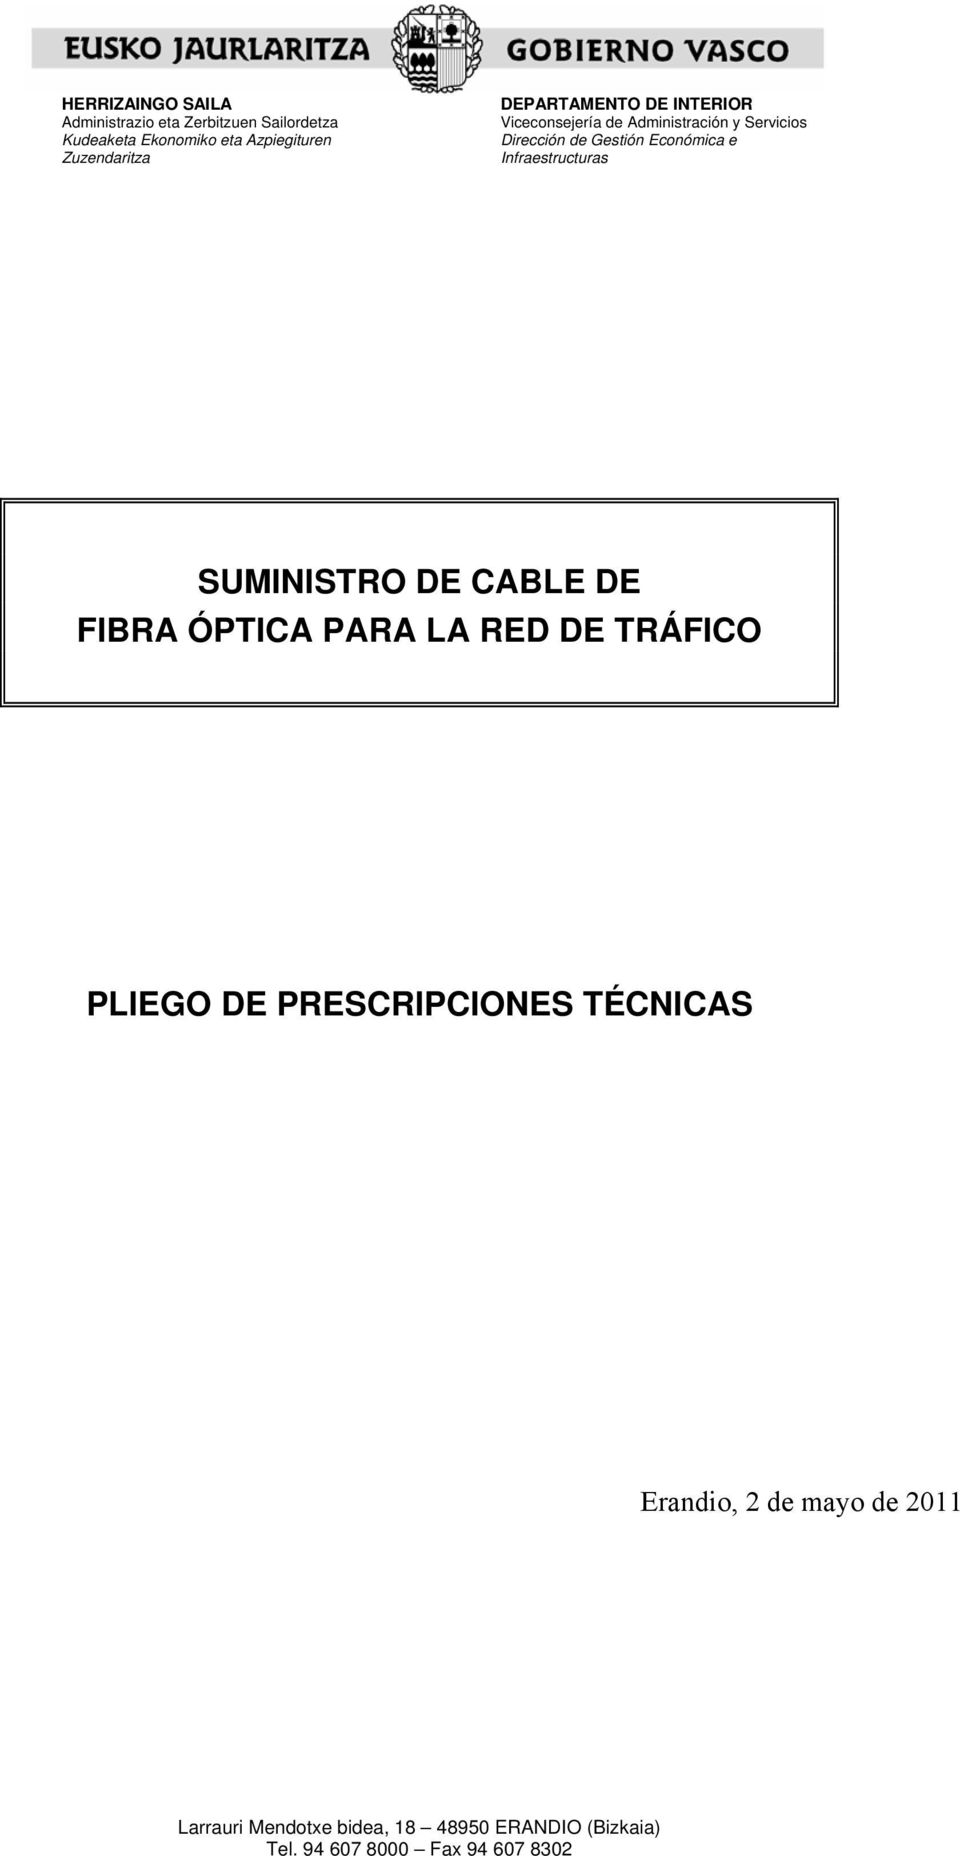 Infraestructuras SUMINISTRO DE CABLE DE FIBRA ÓPTICA PARA LA RED DE TRÁFICO PLIEGO DE PRESCRIPCIONES